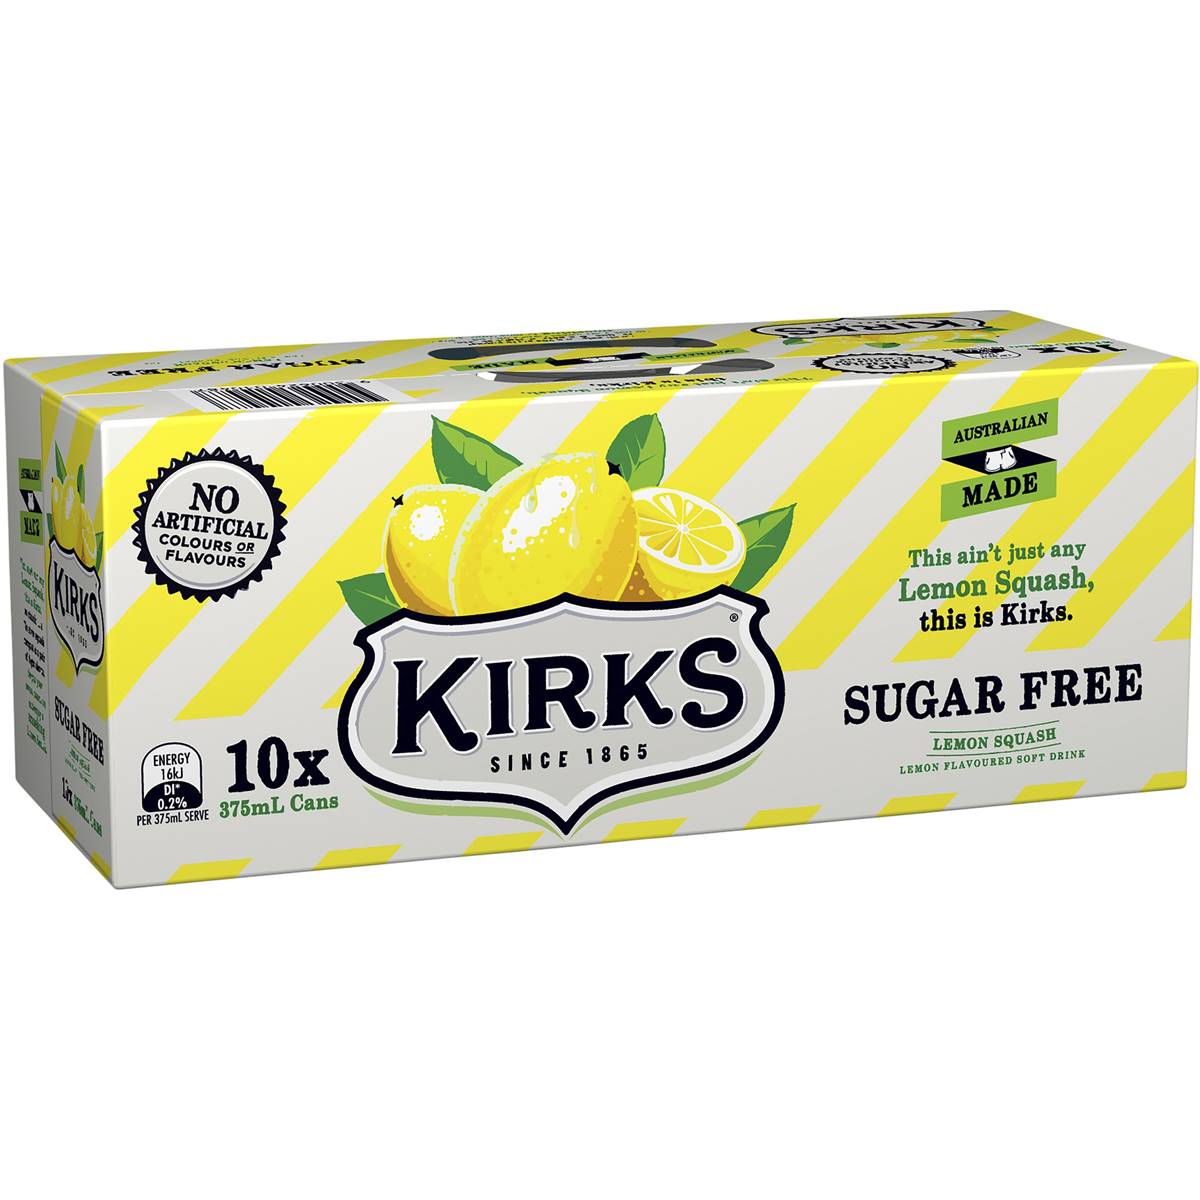 Kirks Sugar Free Lemon Squash Soft Drink Cans 10x375ml